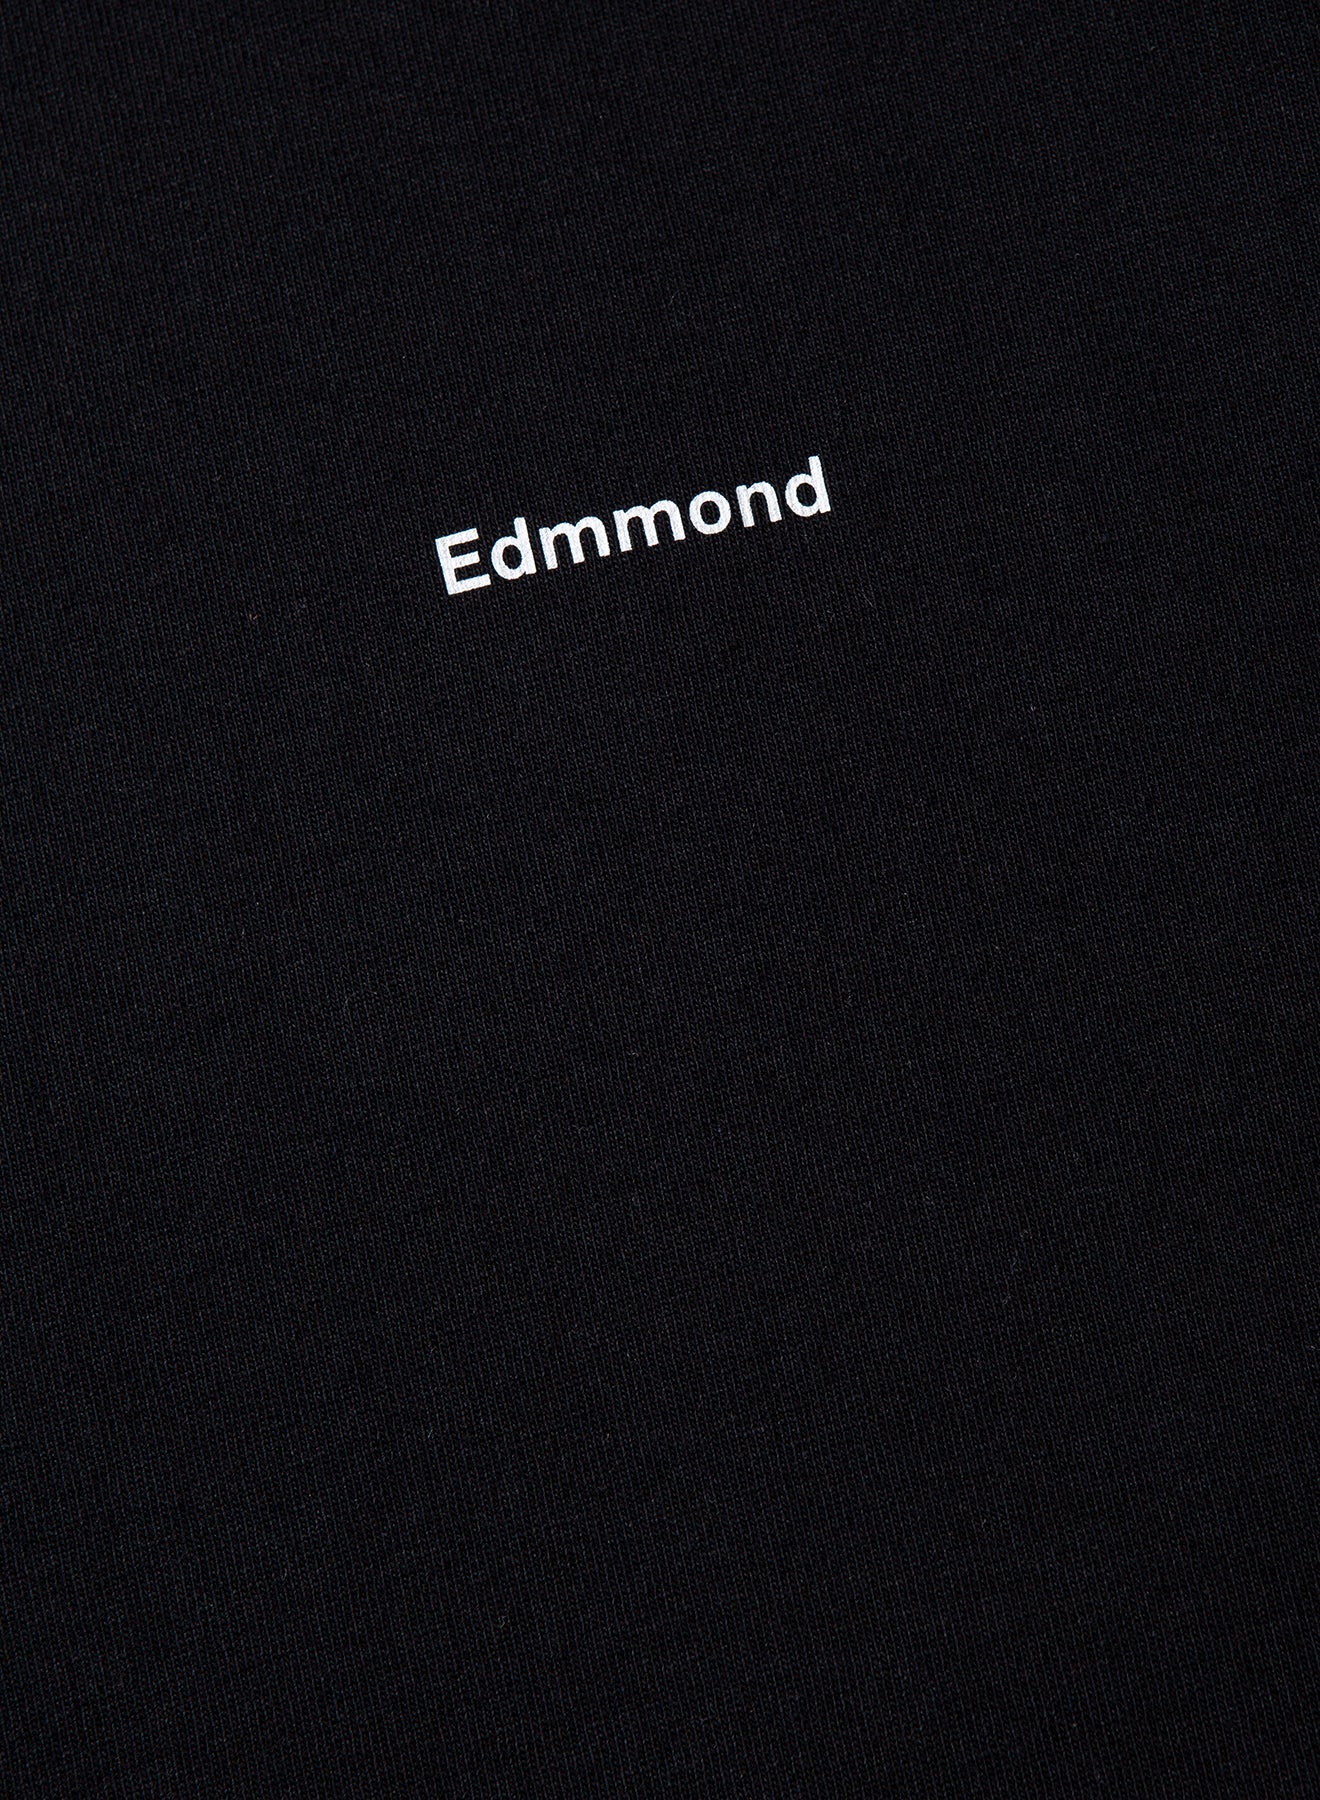 Edmmond Studios Mini Logo Plain Black T-shirt